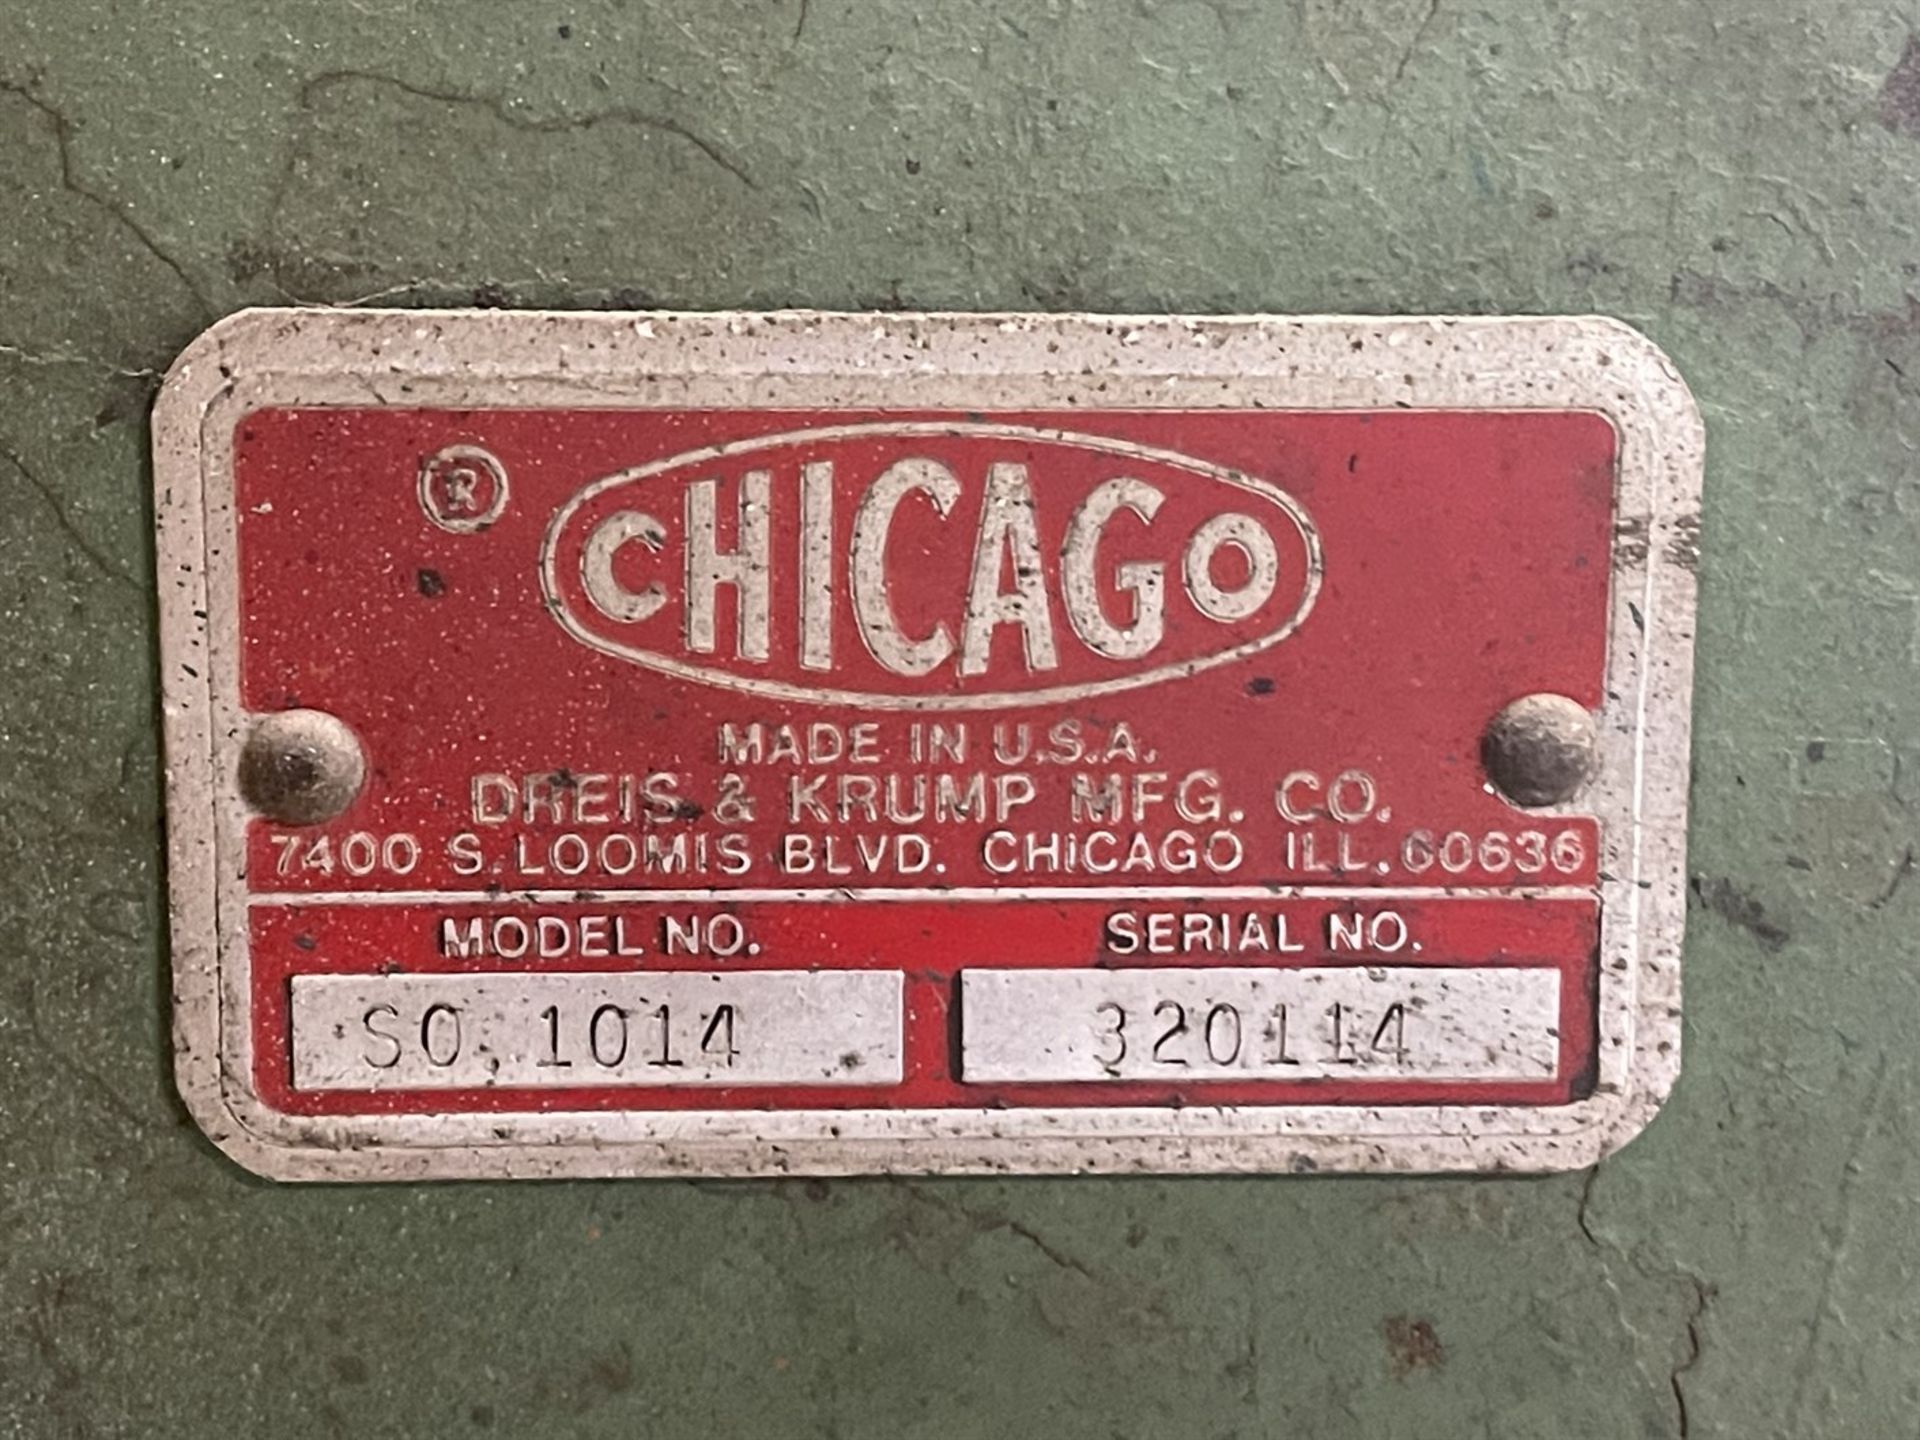 Chicago Dries & Krump SO-014 Hand Brake, s/n 320114, 10' x 14 Gauge - Image 6 of 7